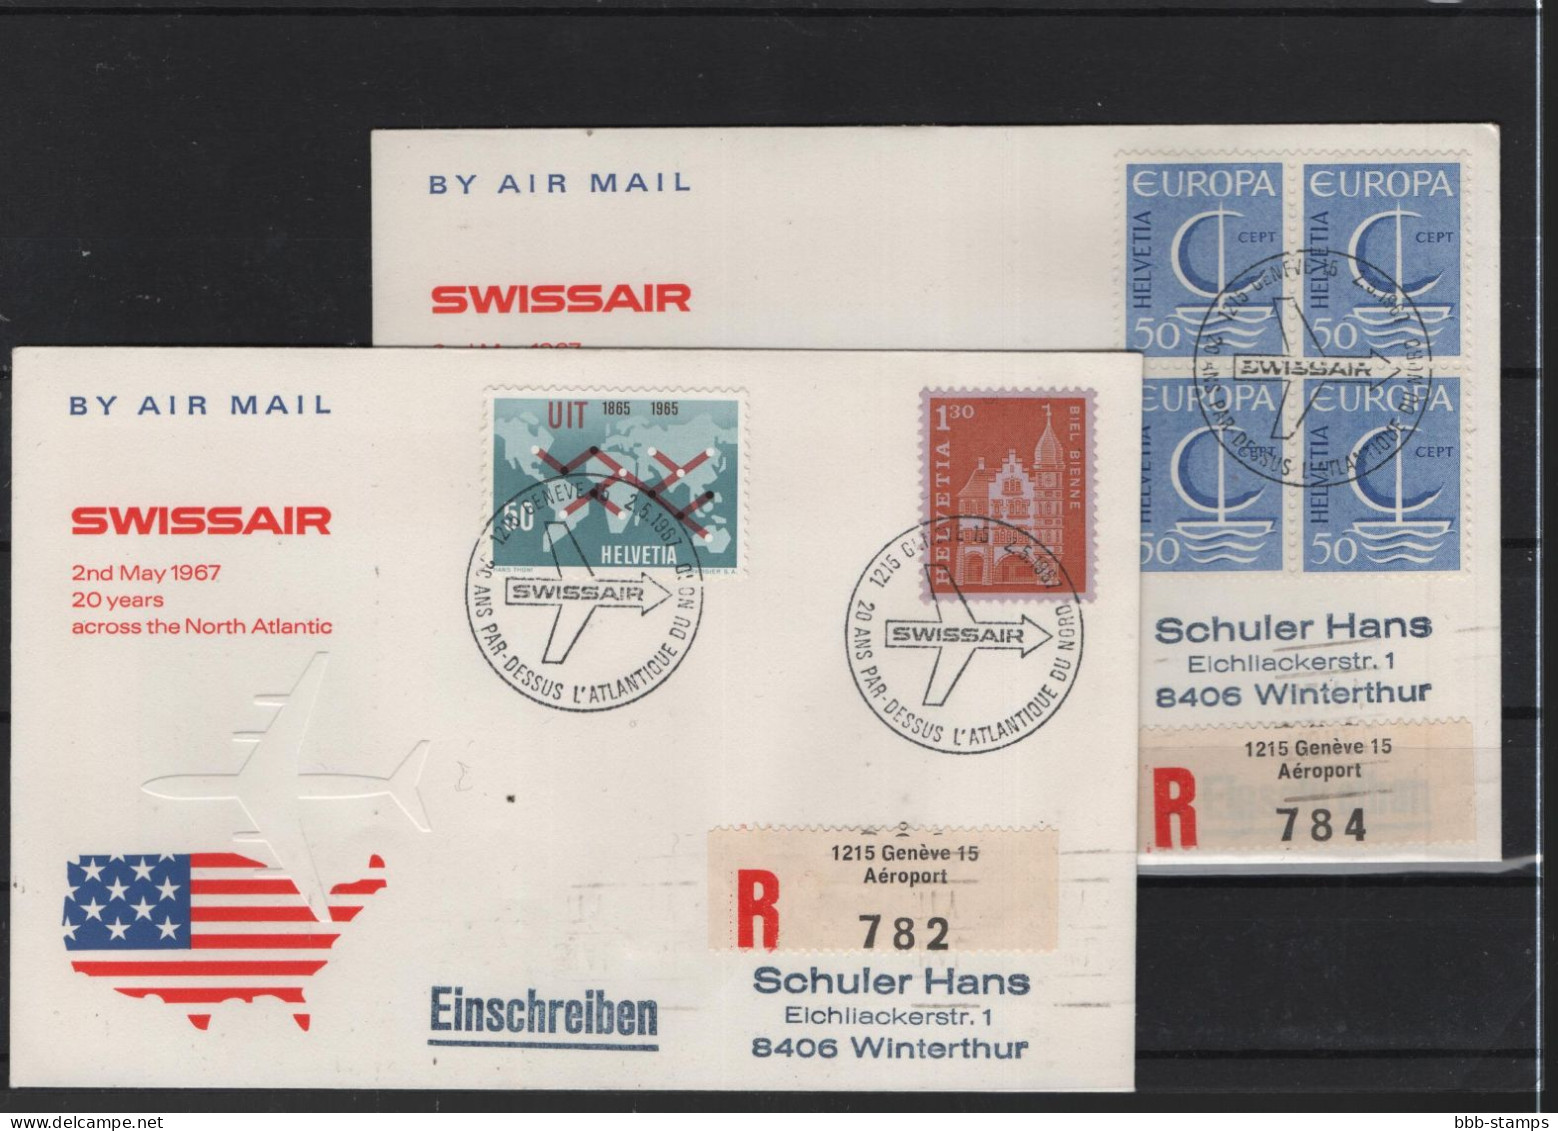 Schweiz Air Mail Swissair  FFC  2.5.1967 Zürich - New York VV - Primi Voli